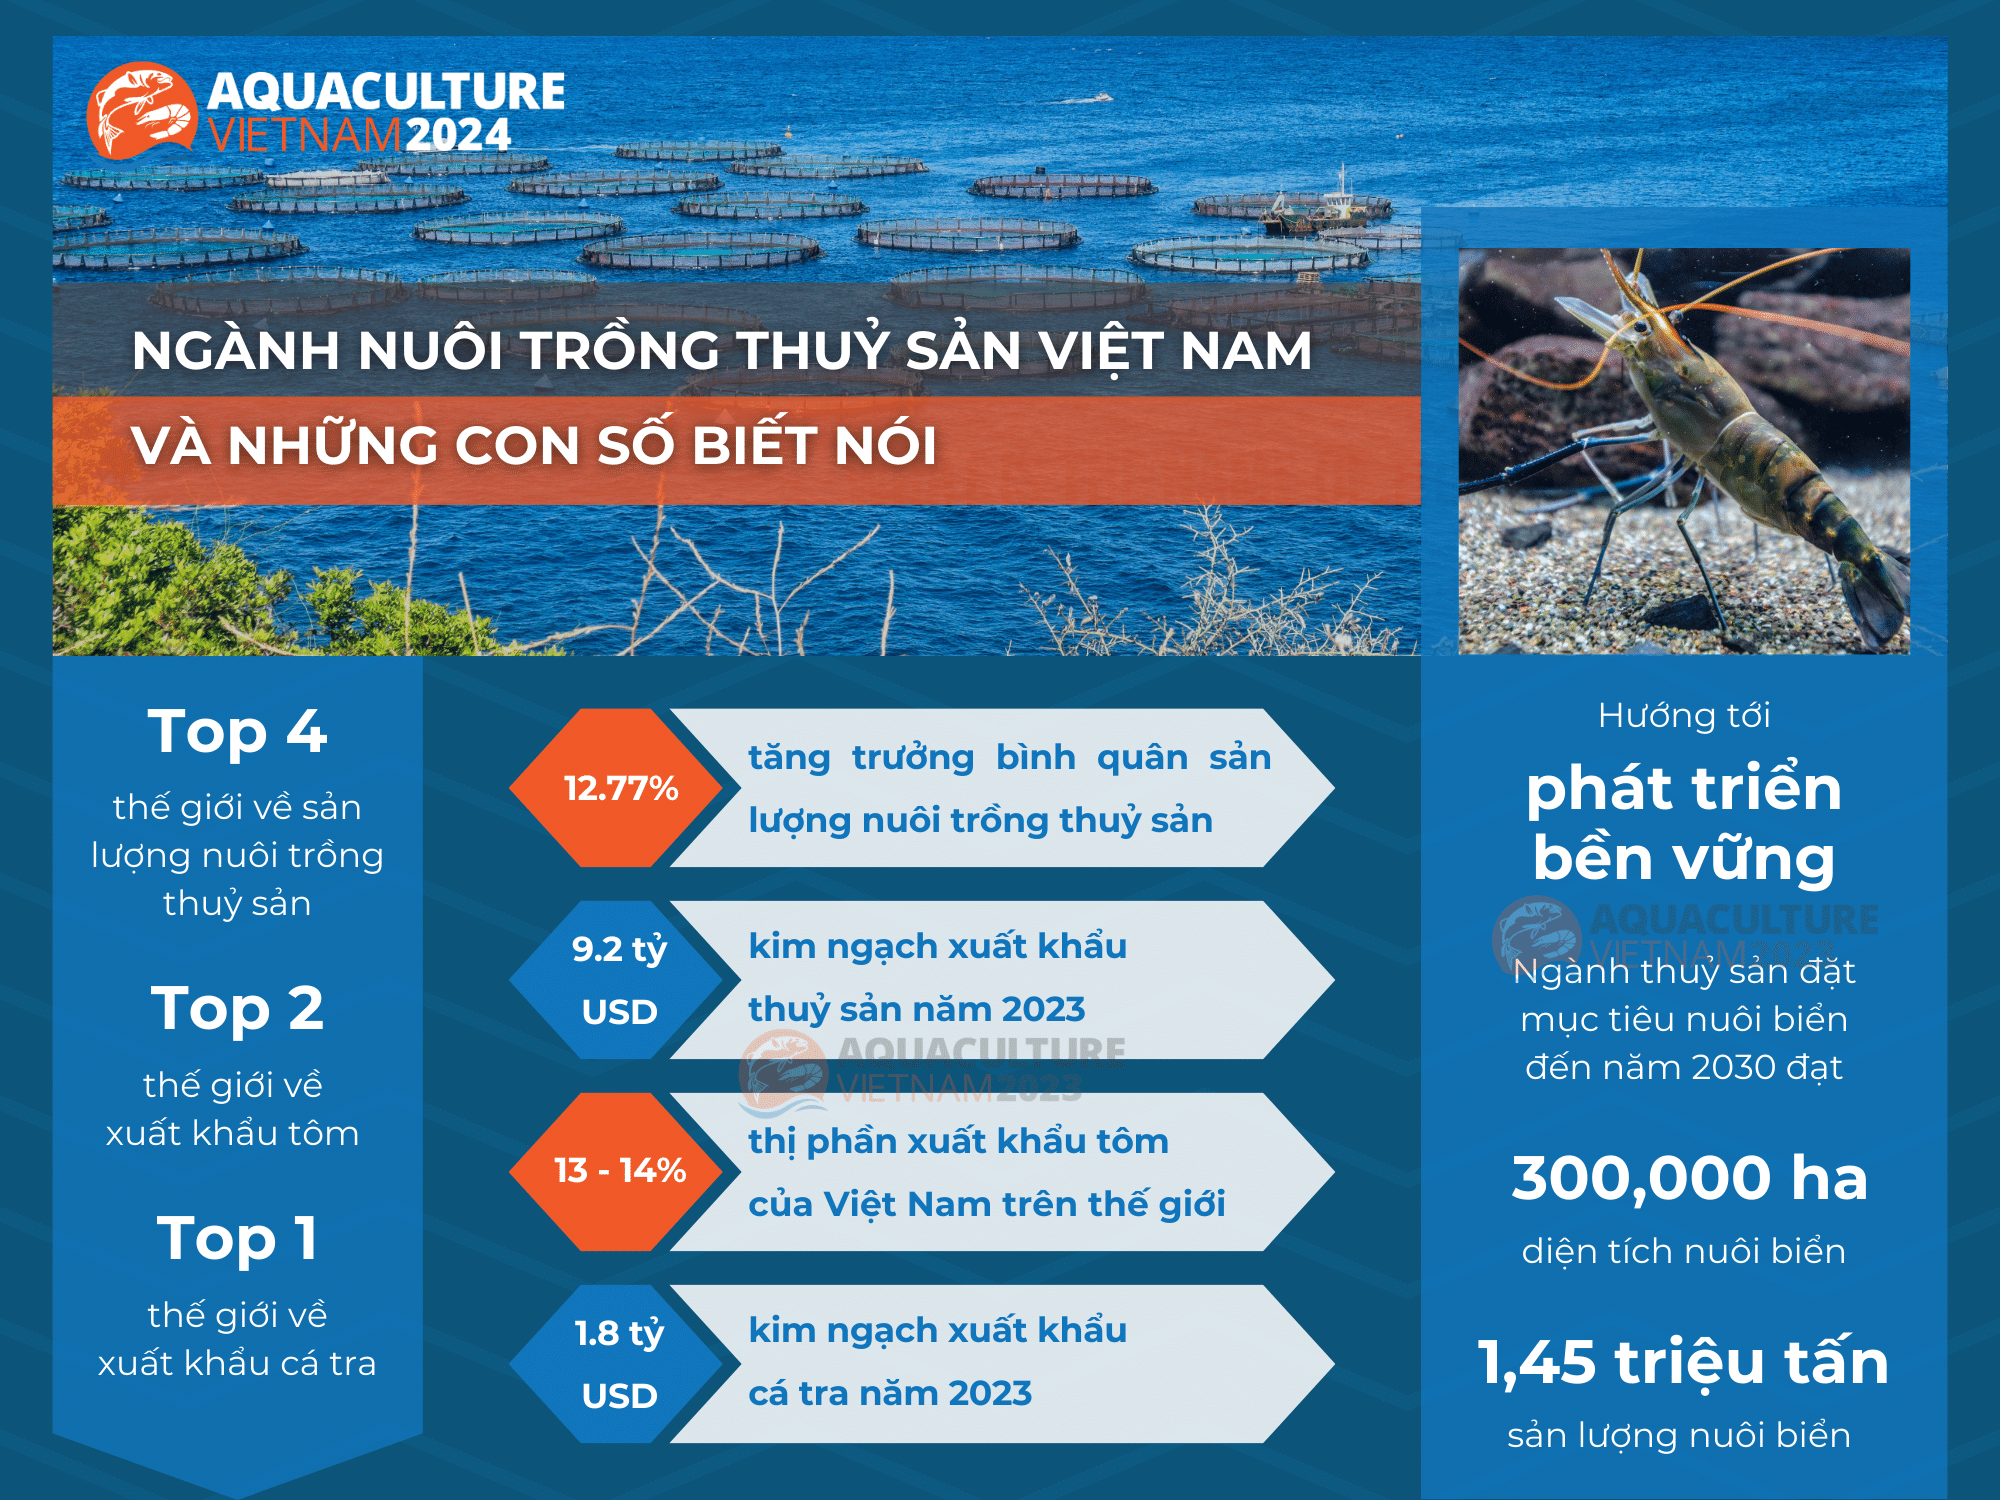 Những thành tựu và hướng phát triển bền vững của nuôi trồng thuỷ sản Việt Nam